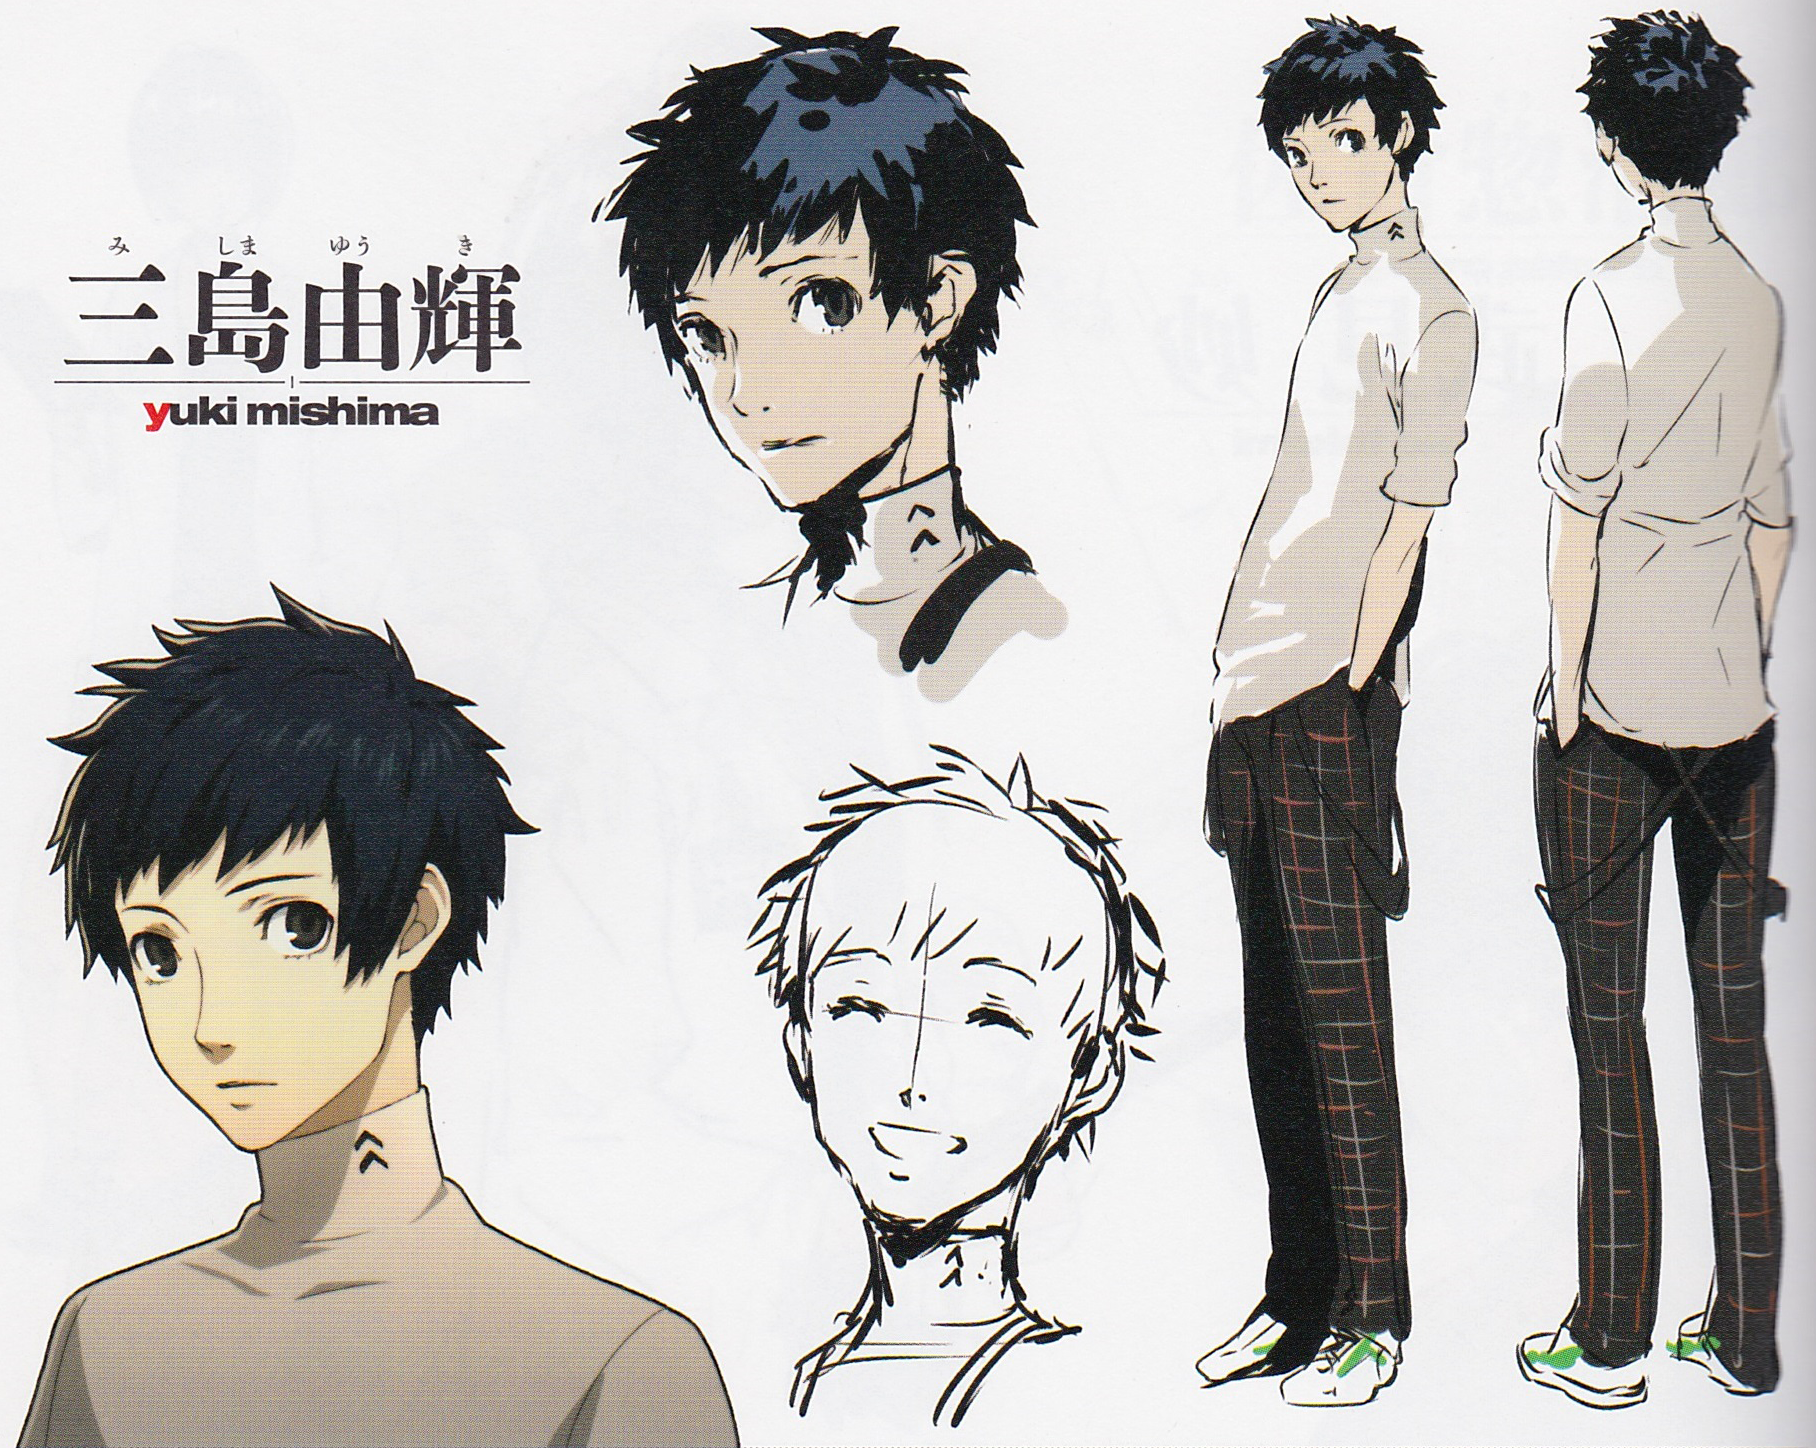 Images Yuuki Mishima Anime Characters Database